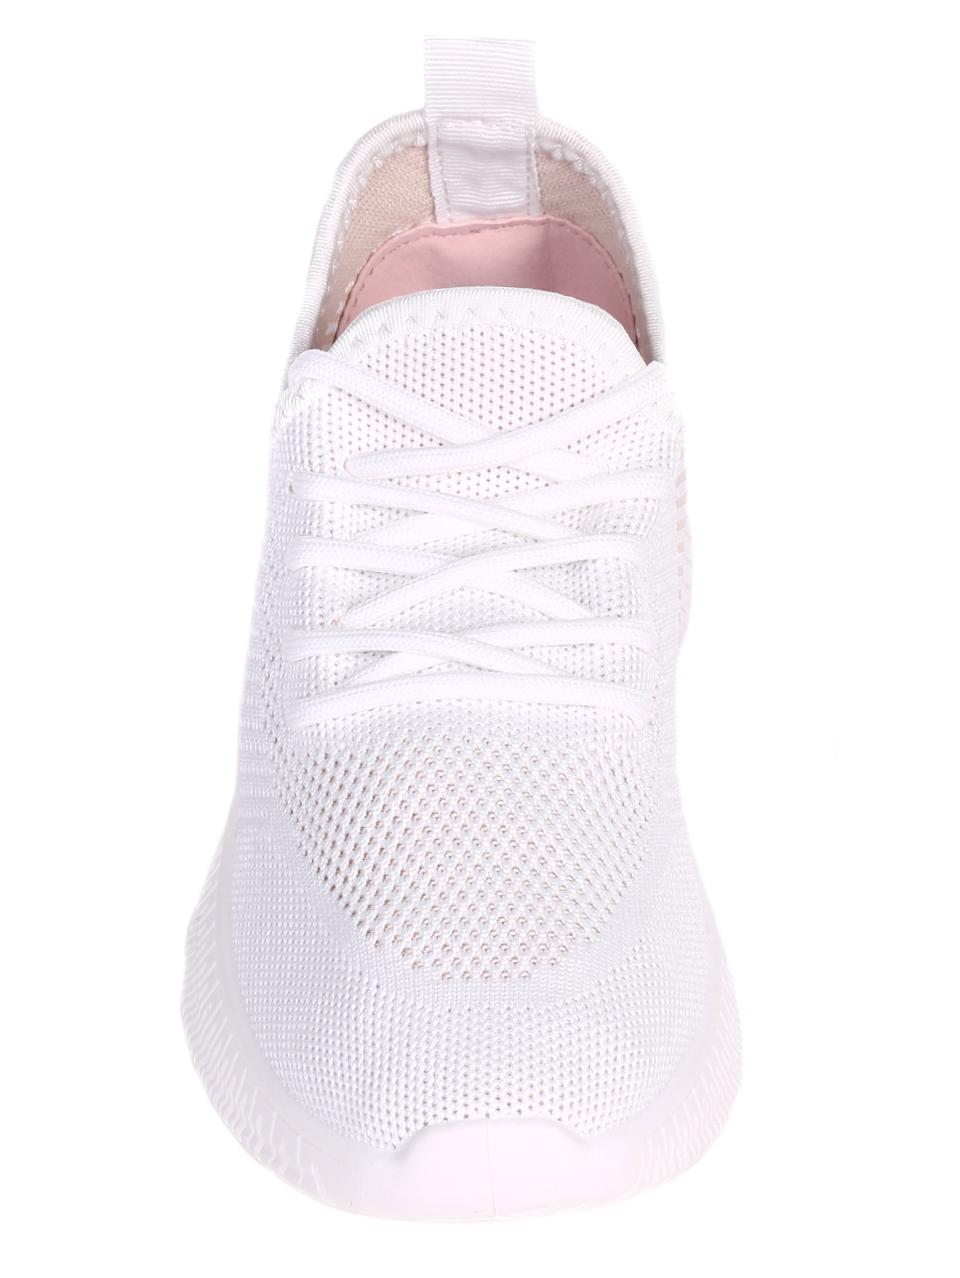 Ежедневни дамски обувки в бяло 3U-22028 white